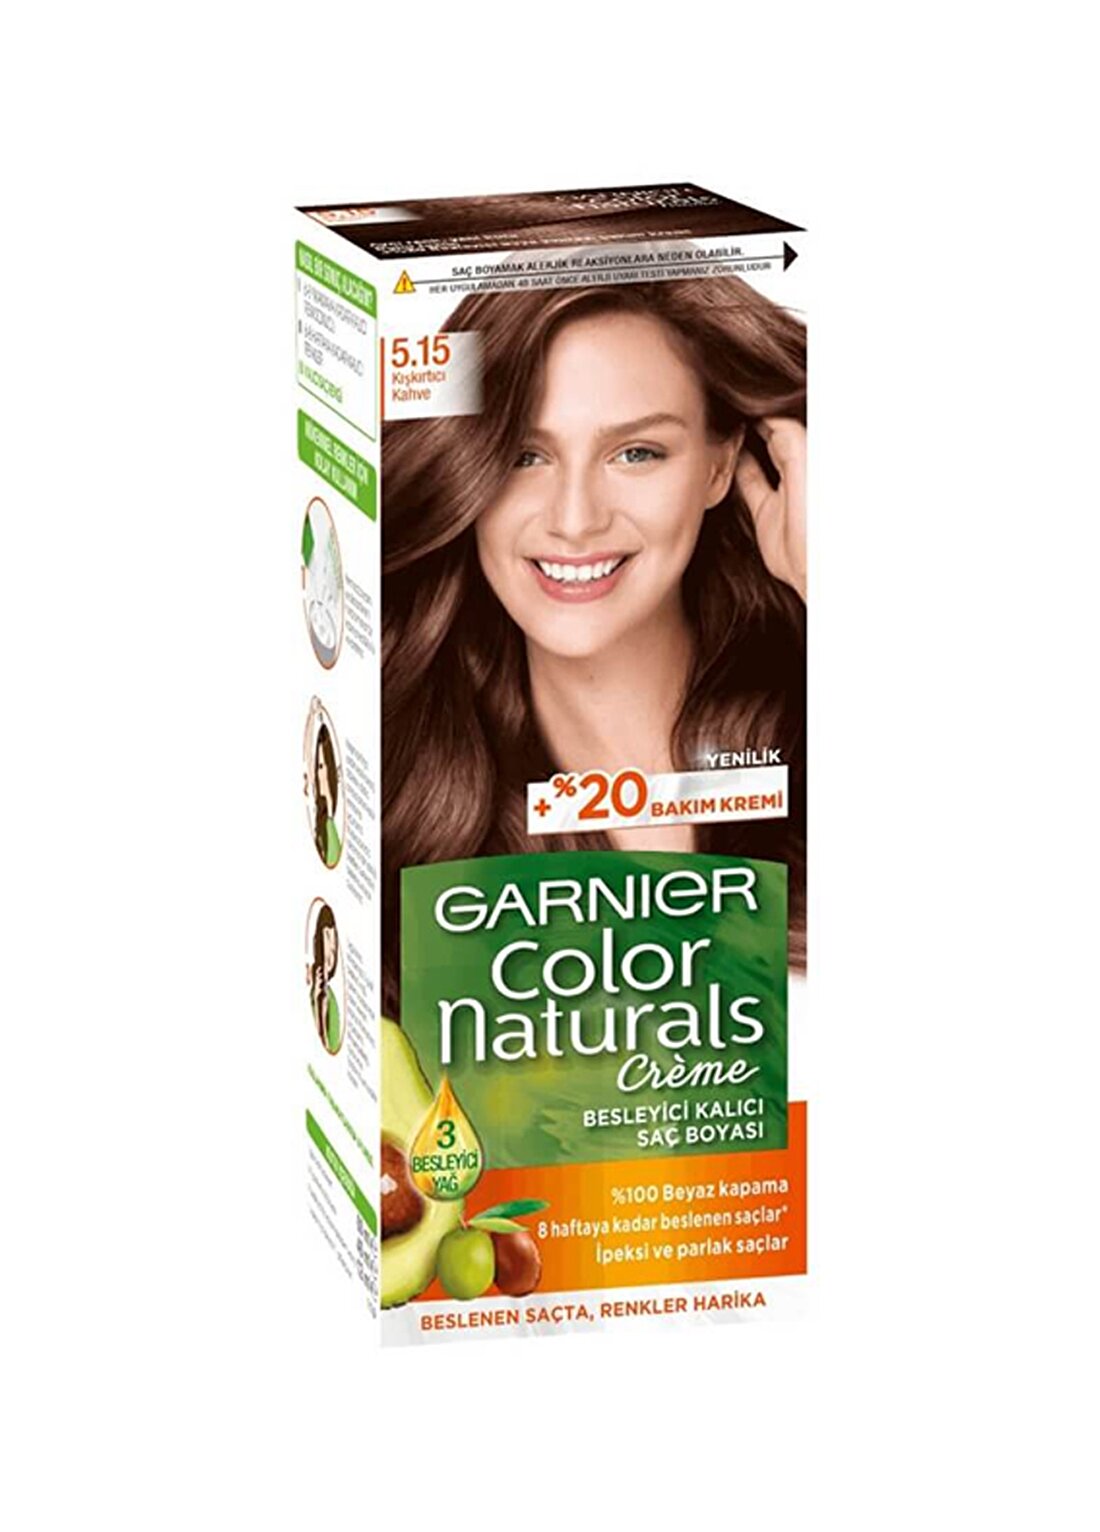 Garnier Color Naturals - 5.15 Kışkırtıcı Kahve Saç Boyası